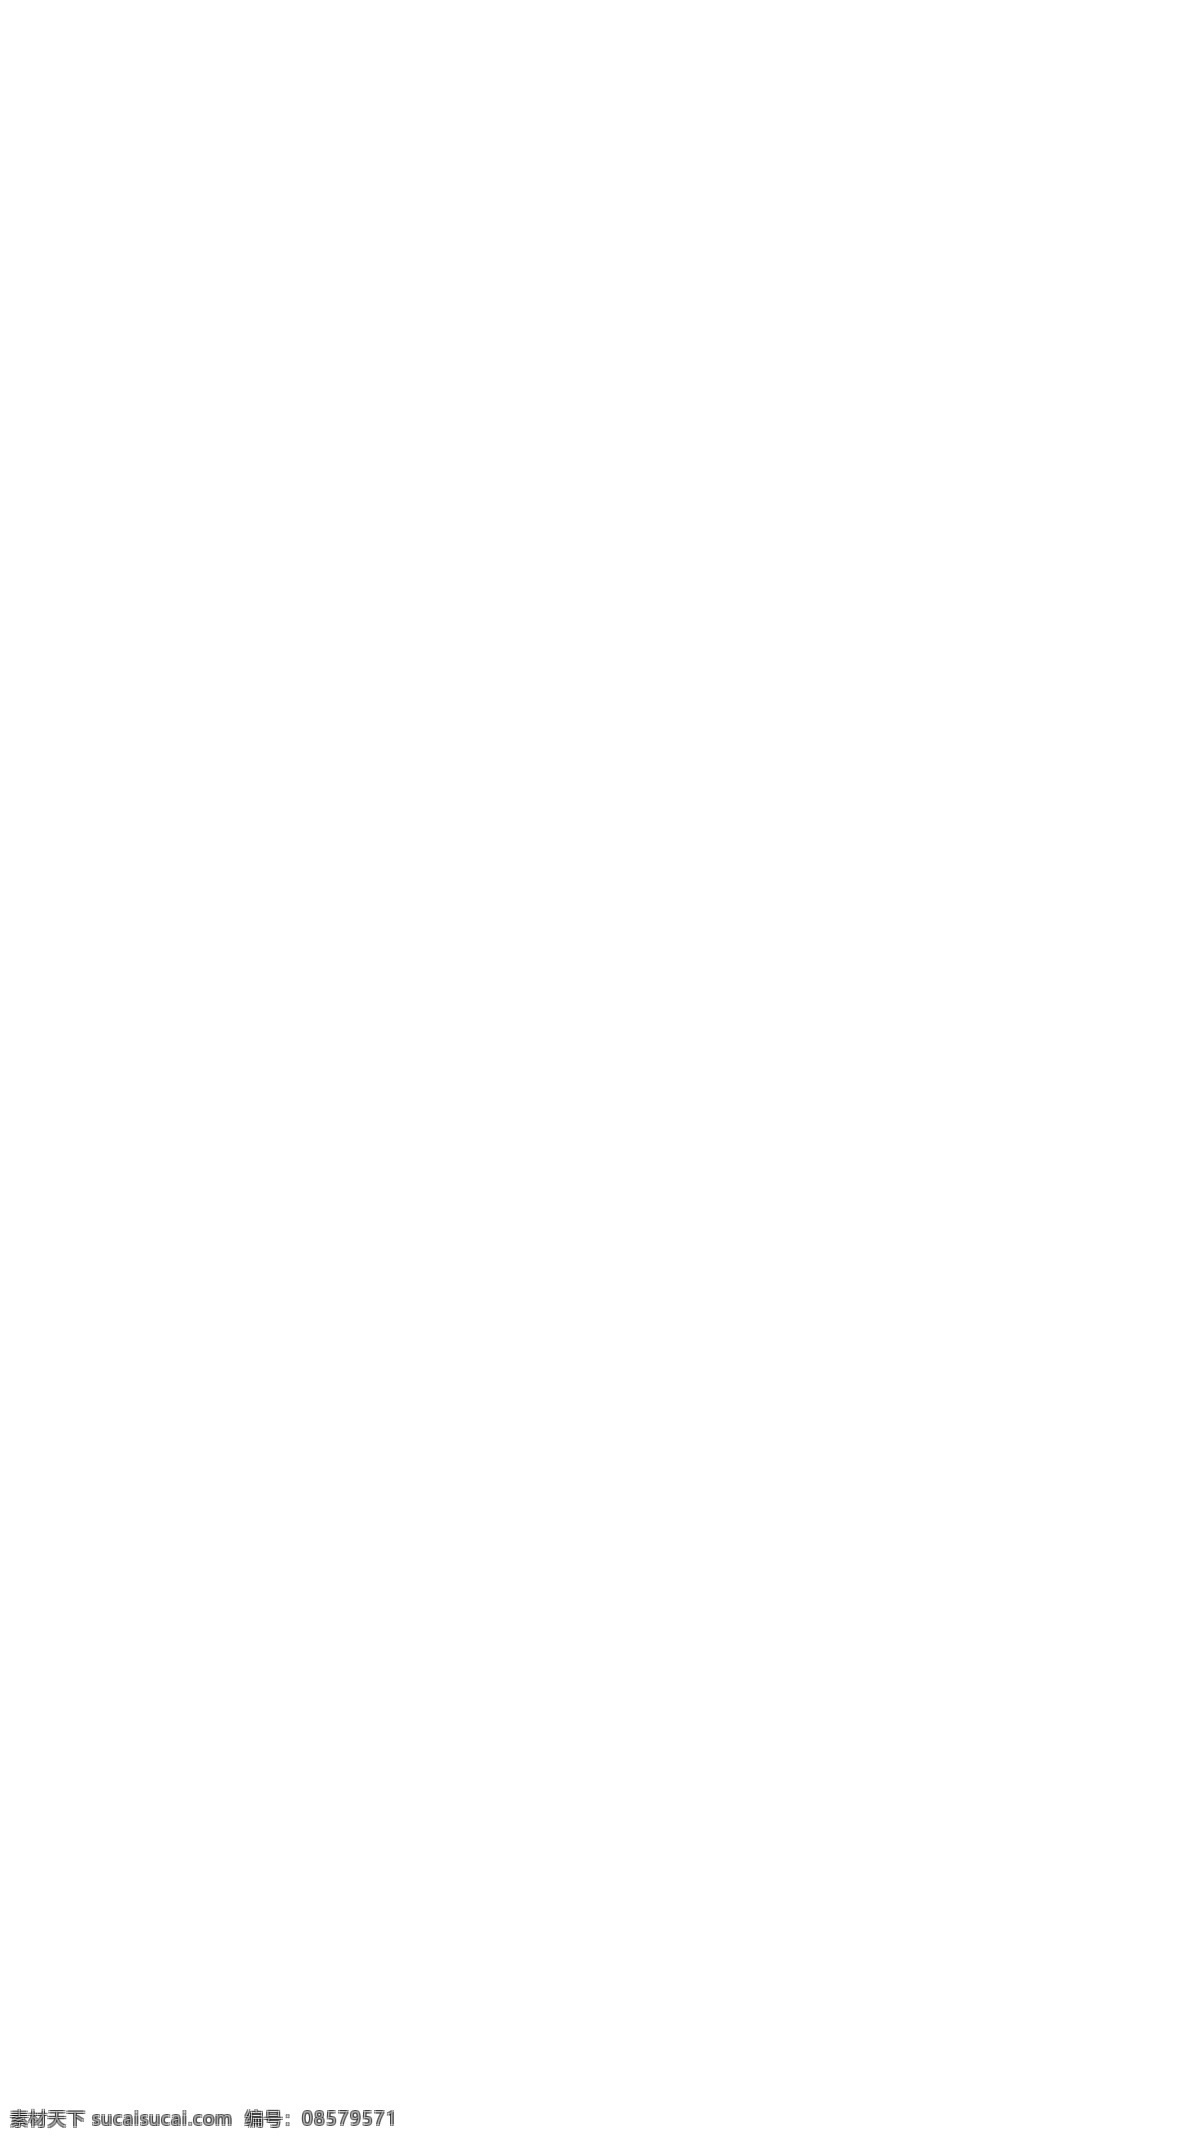 白云 动漫 儿童 帆船 海岸 海景 蓝天 旅途 旅行 旅游 泰国 甲米 沙滩 石头 漫画 亲子 全家 亲子游 椰树 潜水 椰子 行李箱 游泳 原创设计 原创海报